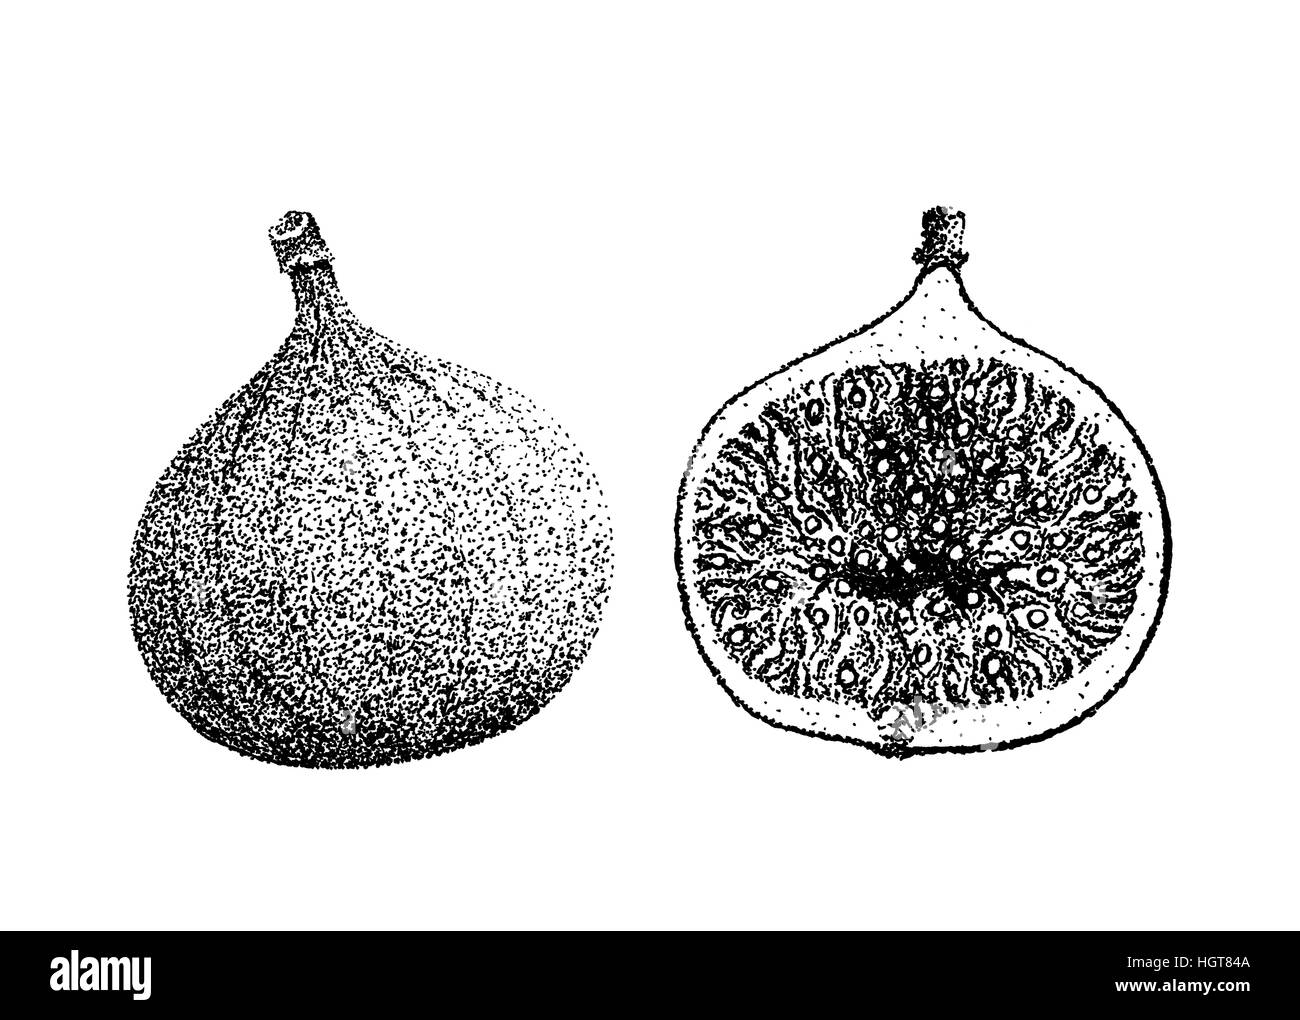 Figura illustrazione di frutta vecchio stile di litografia disegnata a mano Foto Stock